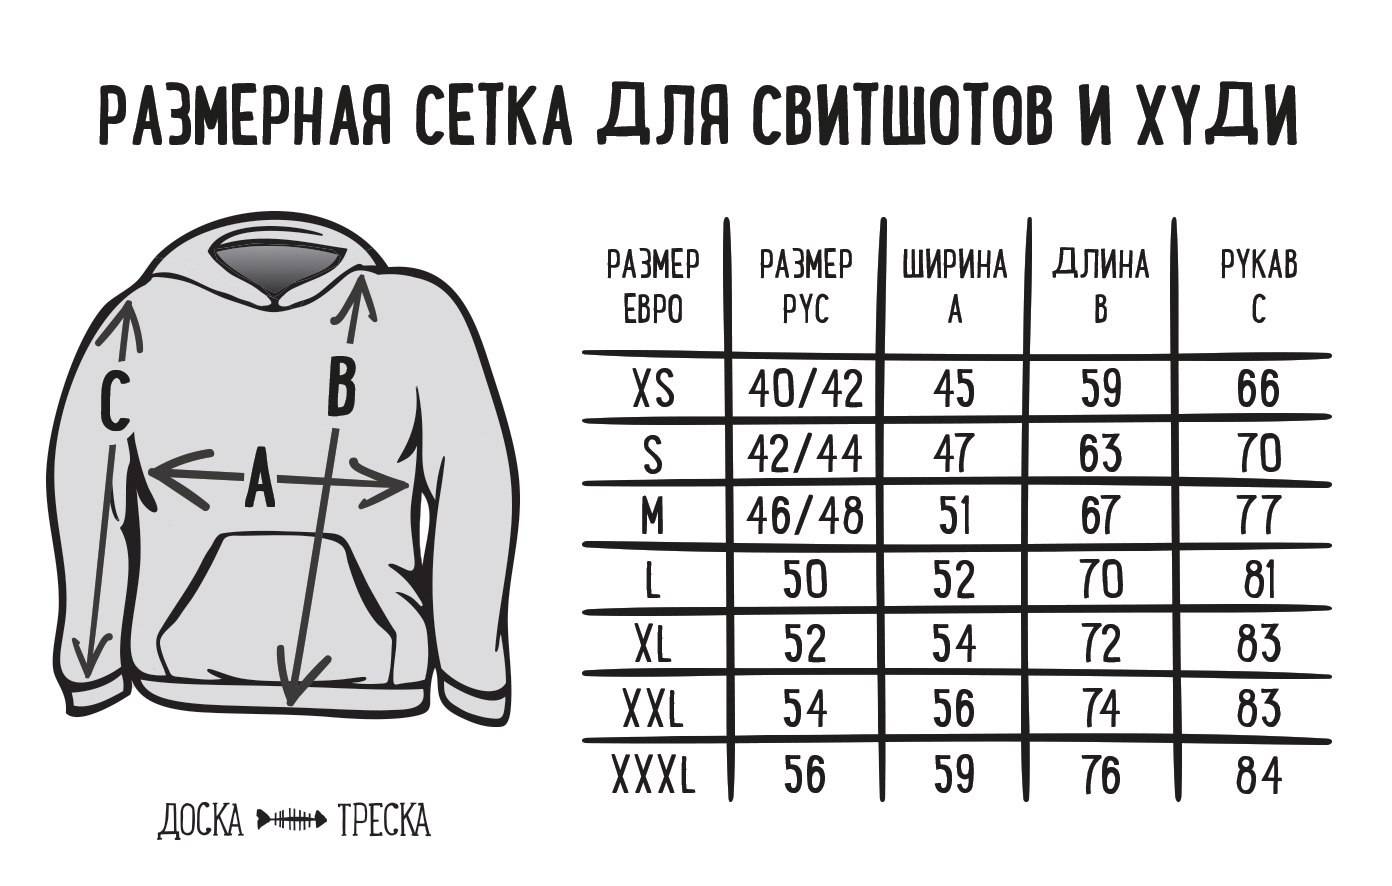 44 размер - это s или m? учимся определять размер одежды.